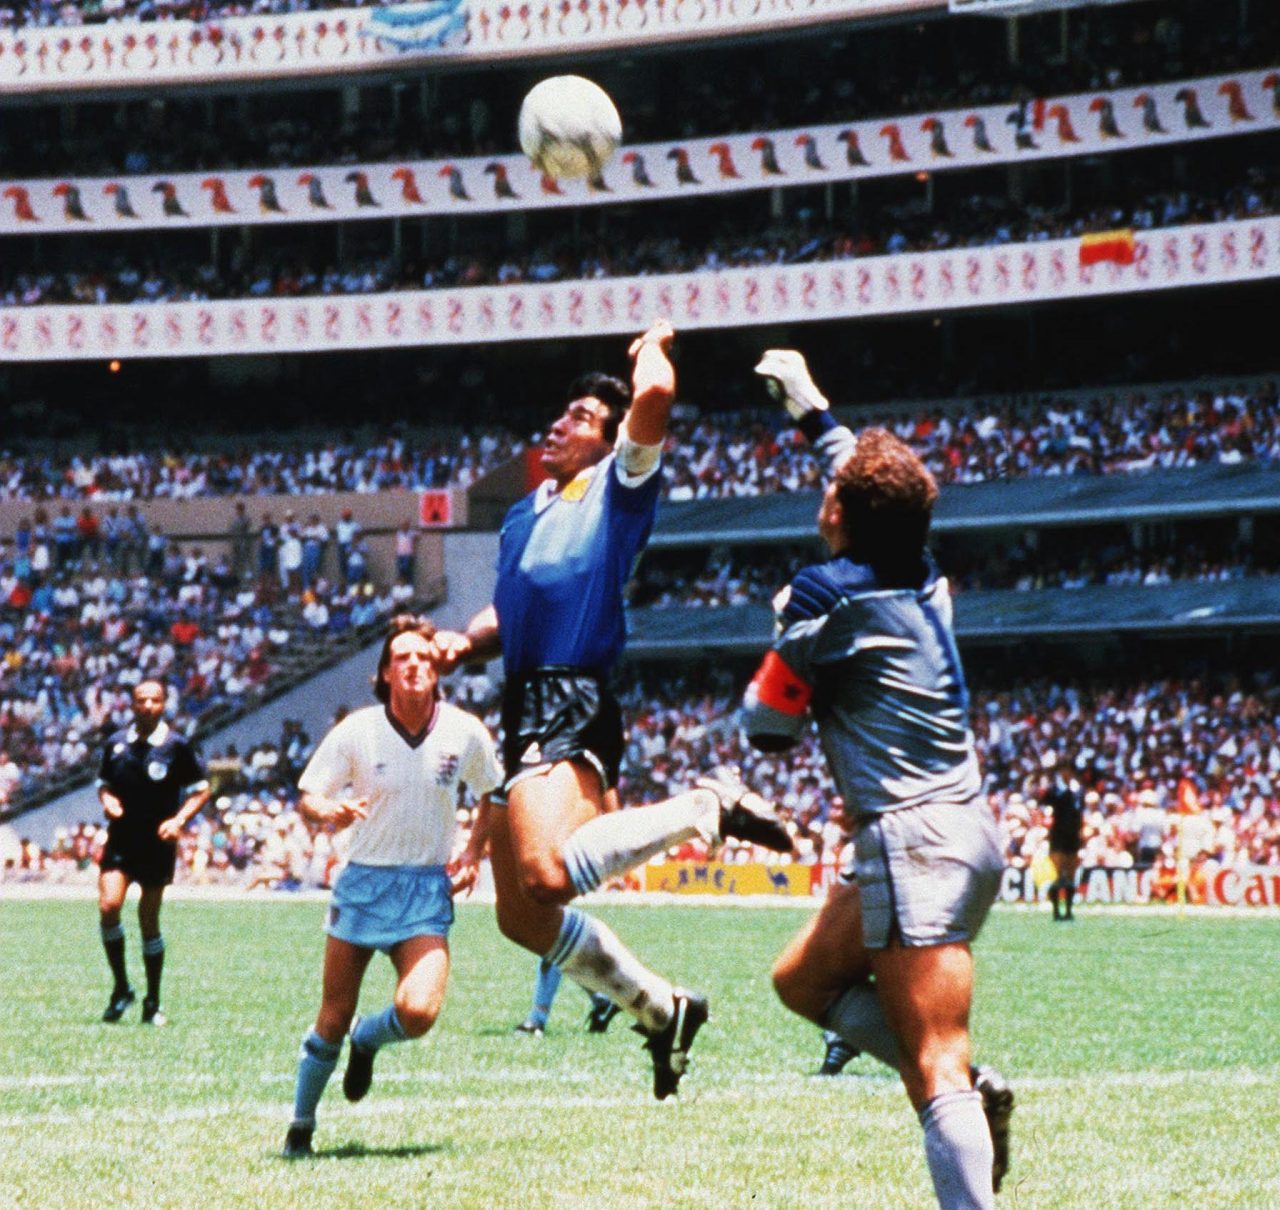 1986 World Cup - Quarter Final - Argentina v England - Mexico City - 22 Jun 1986. Diego Maradona scoring the 'Hand of God' goal 22 Jun 1986